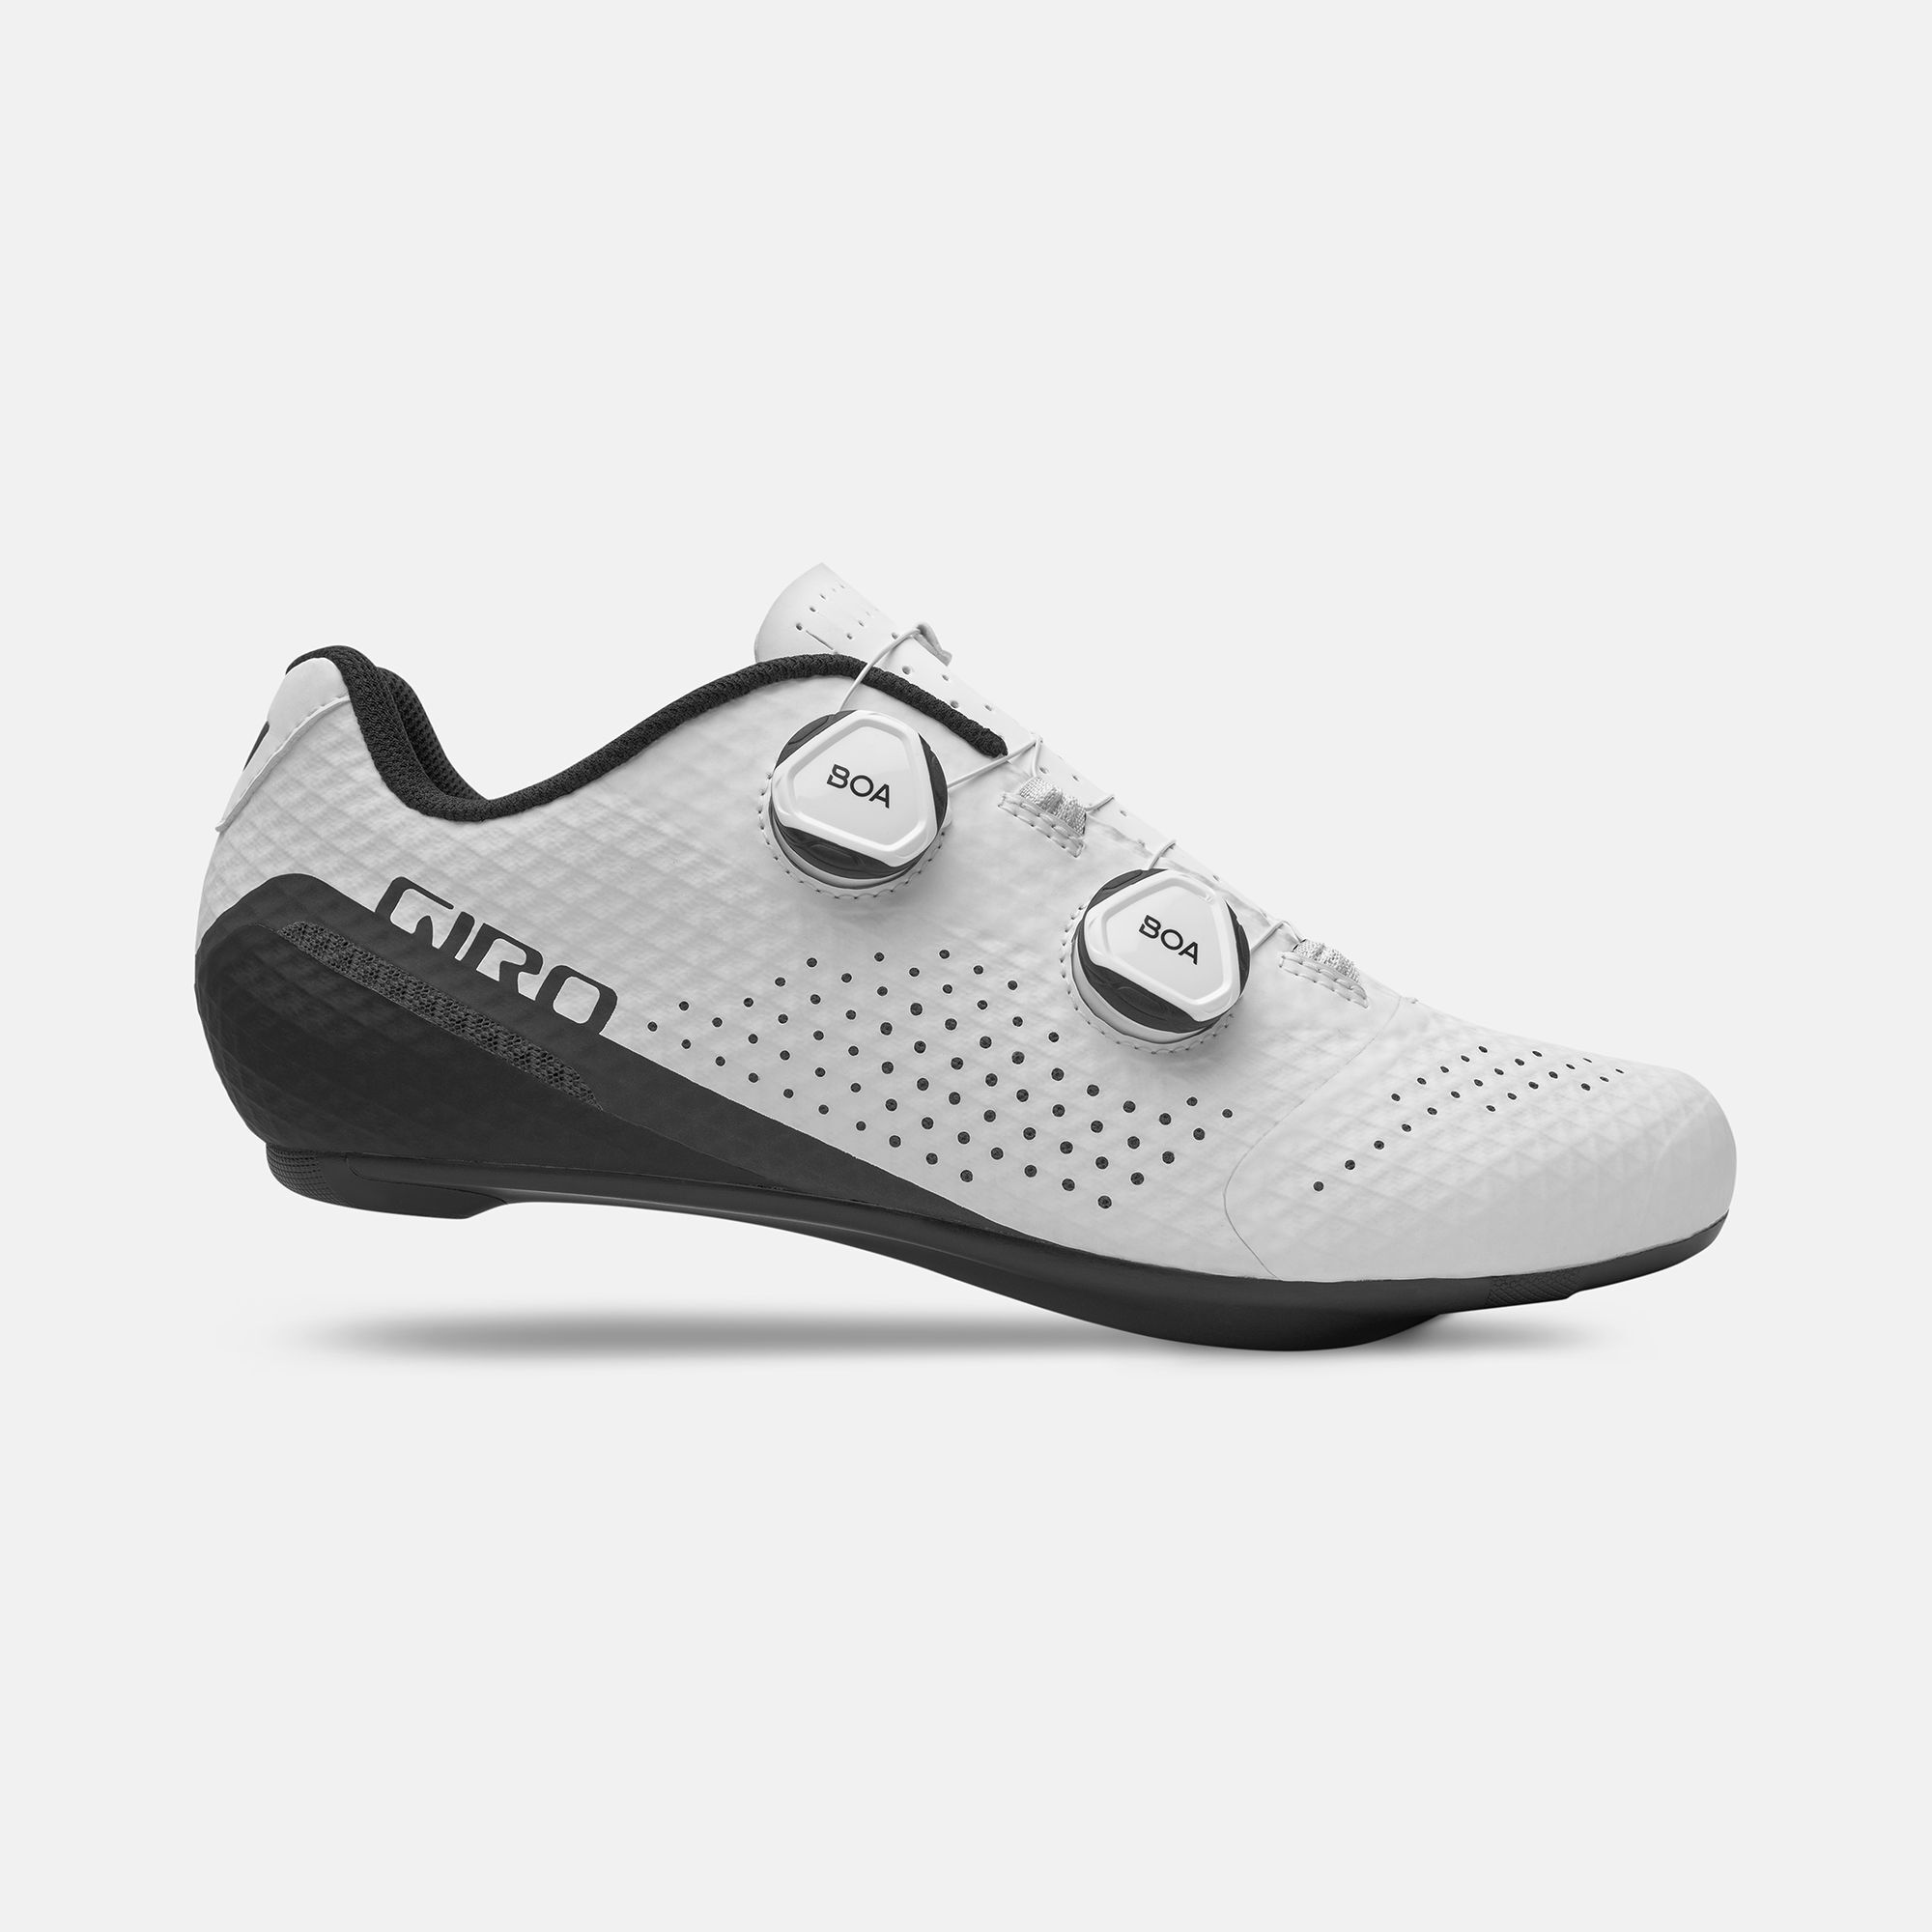 giro white cycling shoes